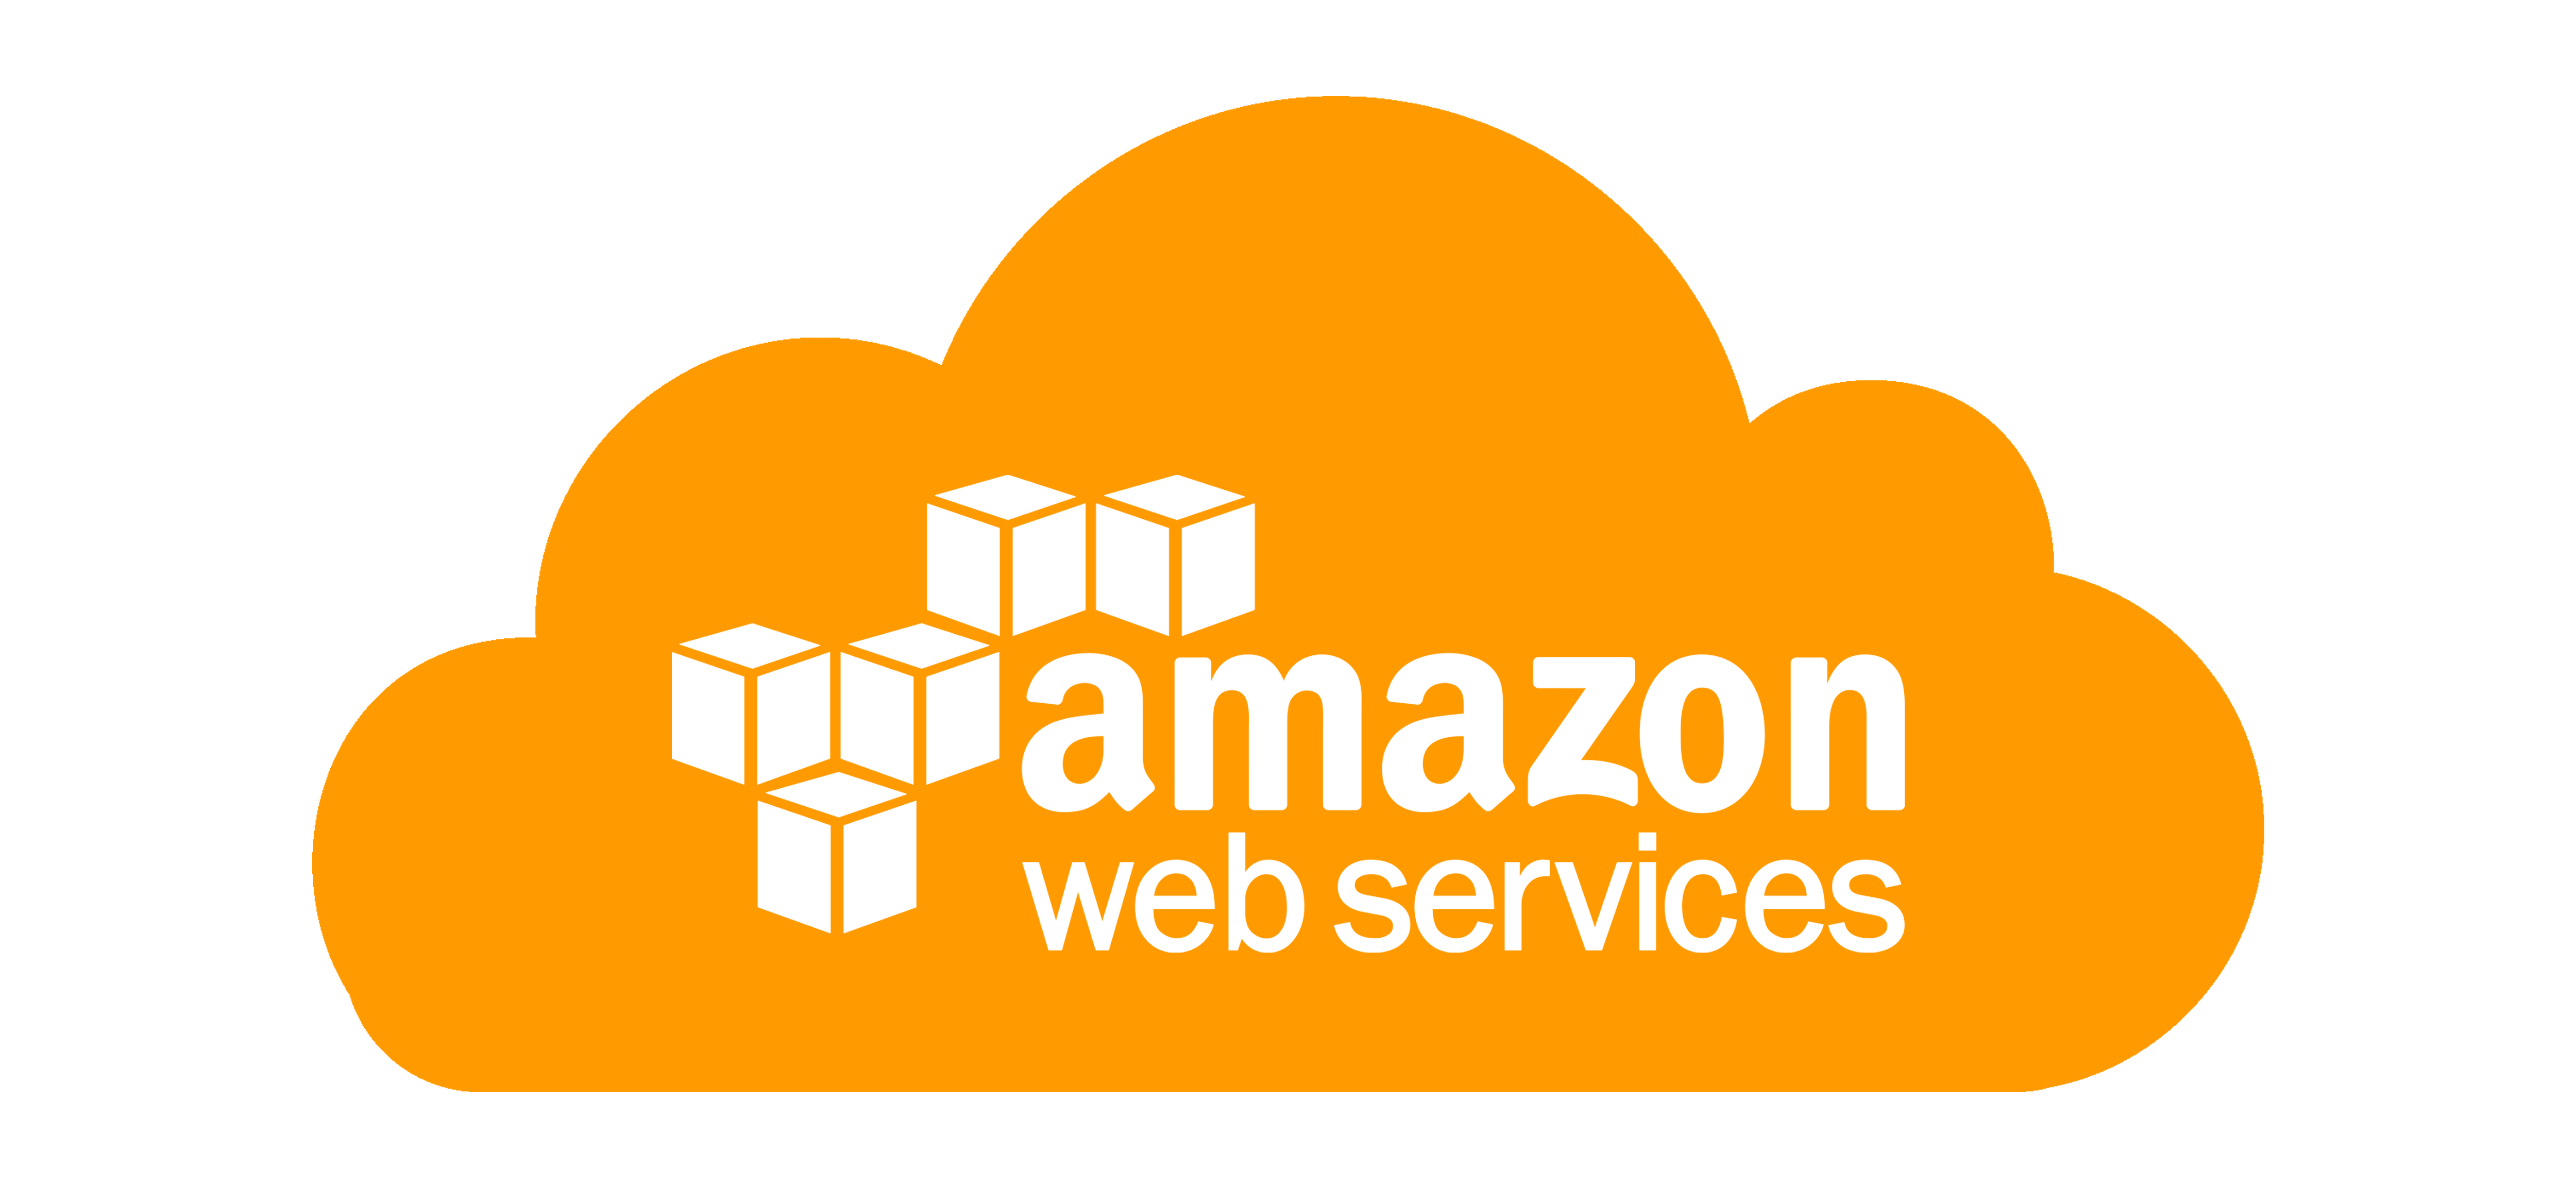 Amazon облачные сервисы. AWS логотип. Amazon web services логотип. Amazon AWS logo. Amazon web services (AWS).